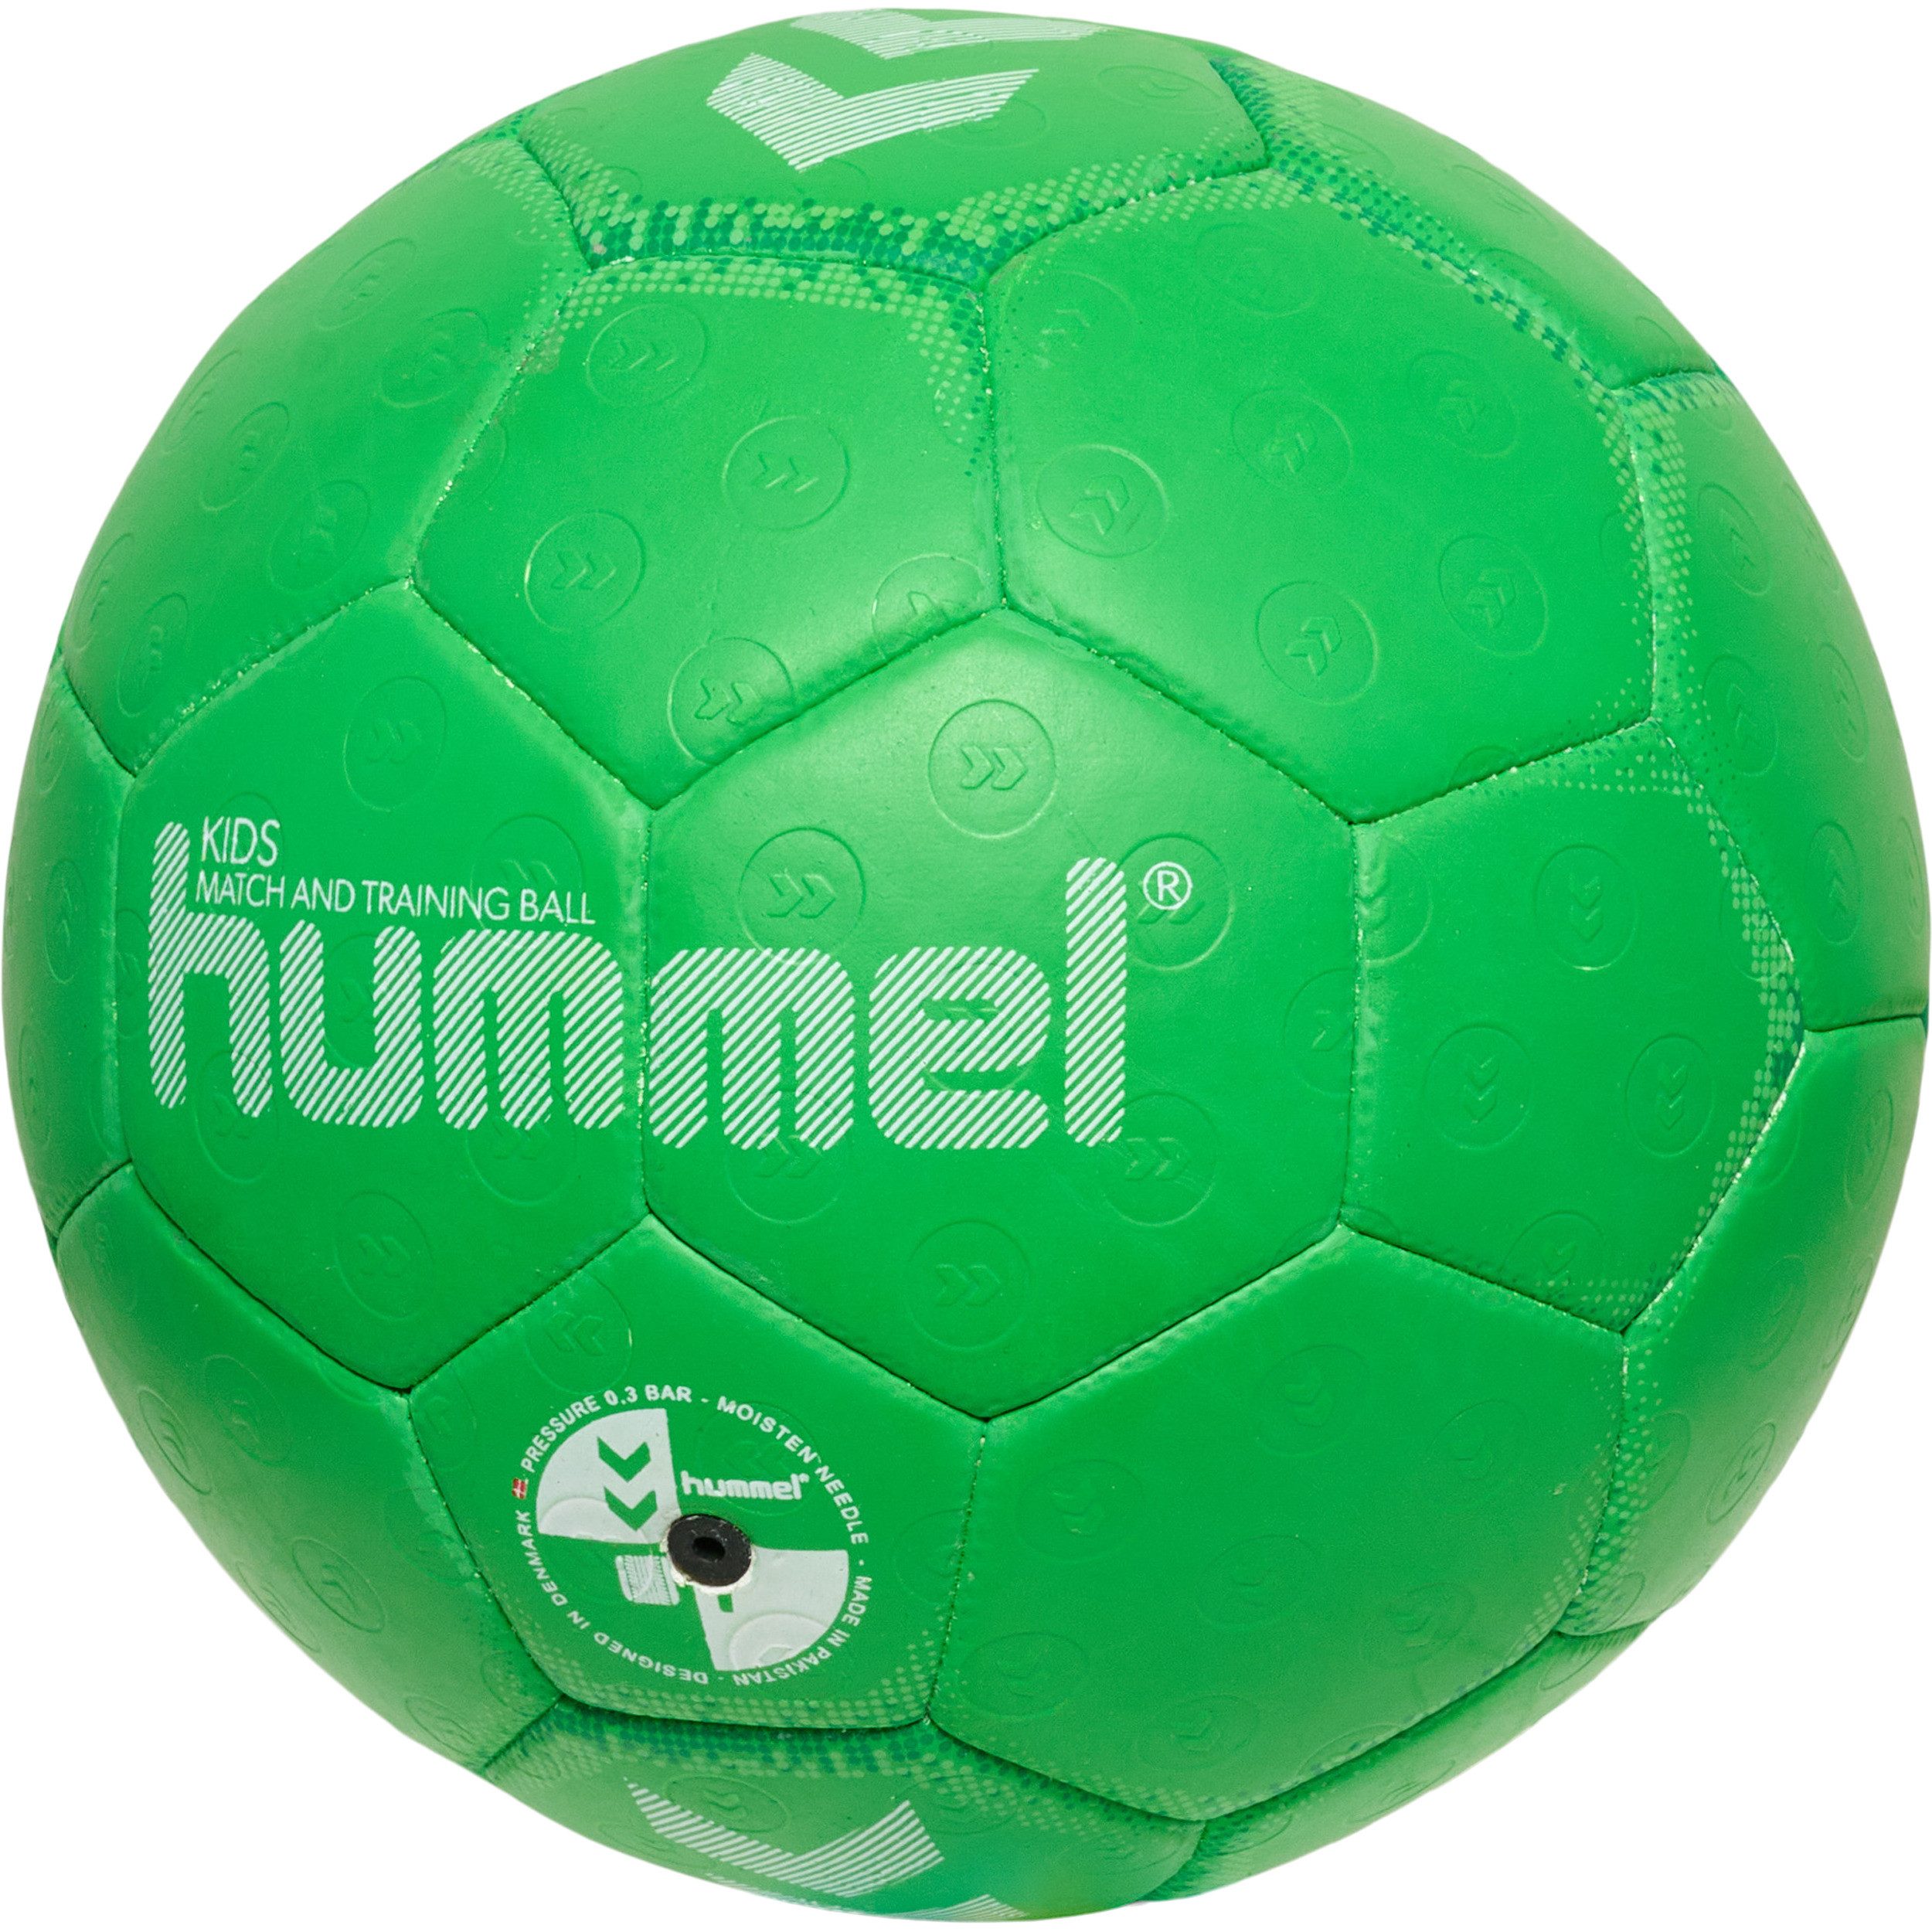 hummel Handball Handball Kids